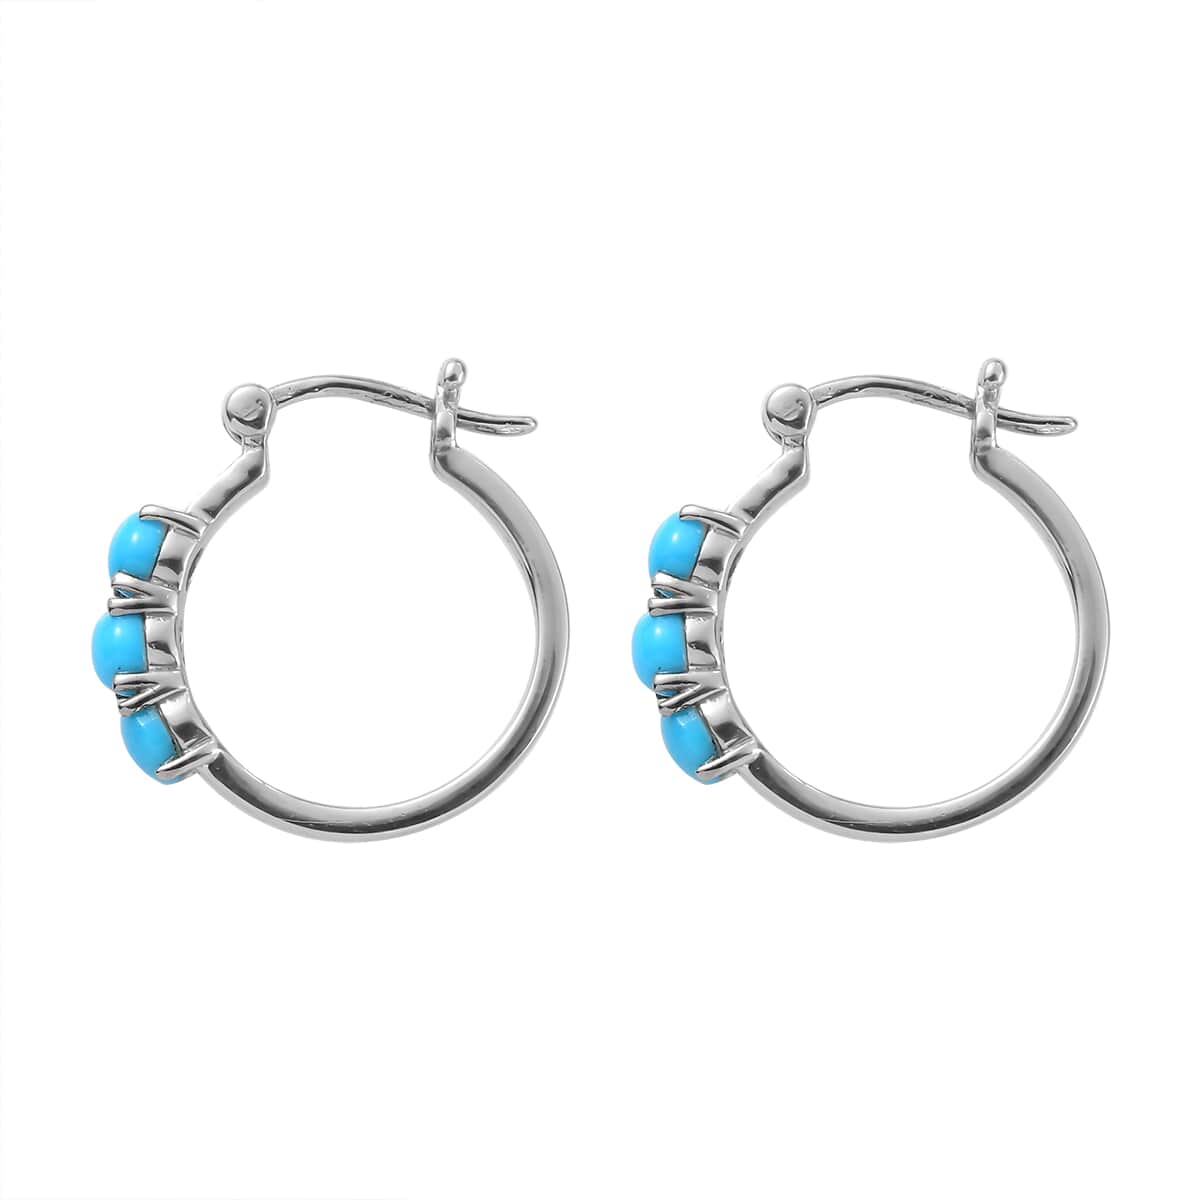 Buy Sleeping Beauty Turquoise Hoop Earrings in Stainless Steel 1.50 ctw ...